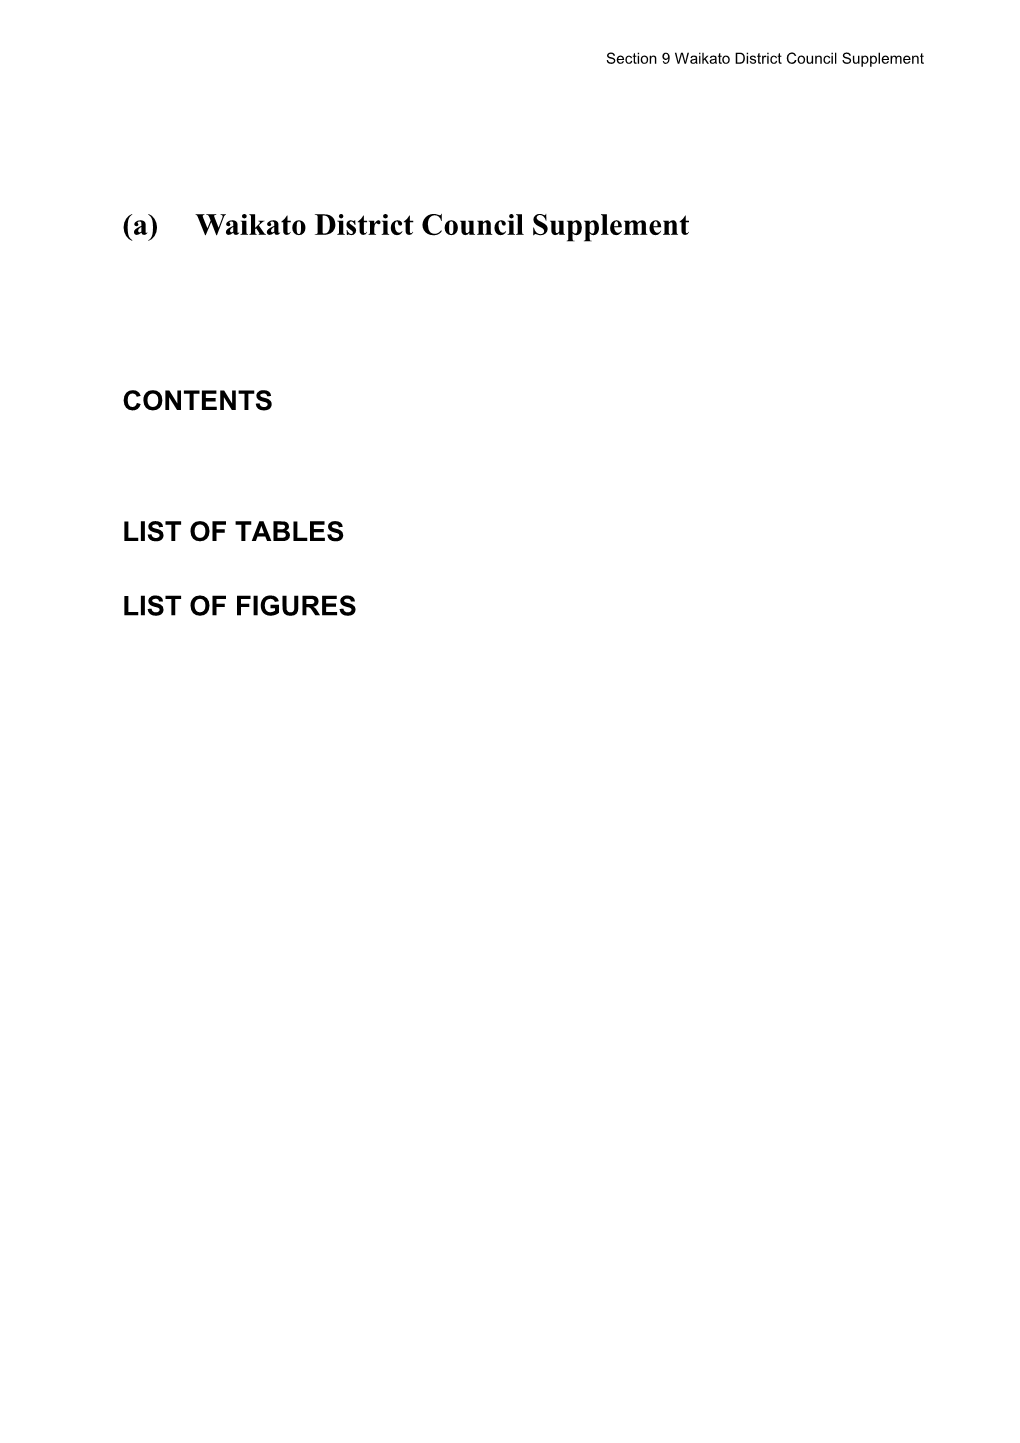 9 Waikato District Council Supplement